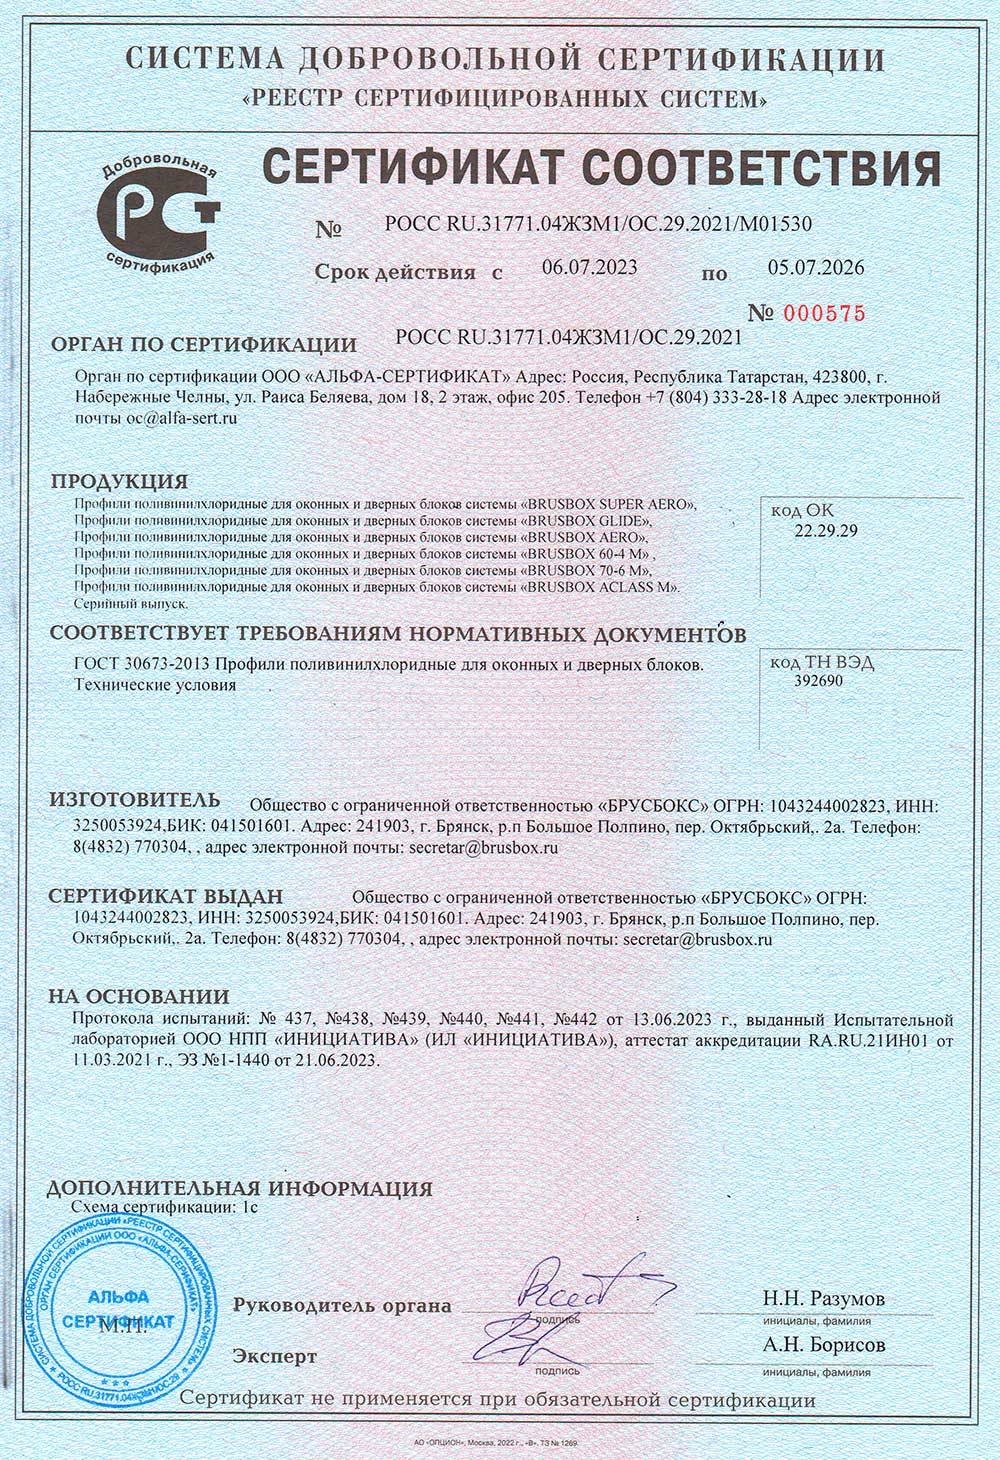 Brusbox, сертификат соответствия, 05.07.2026